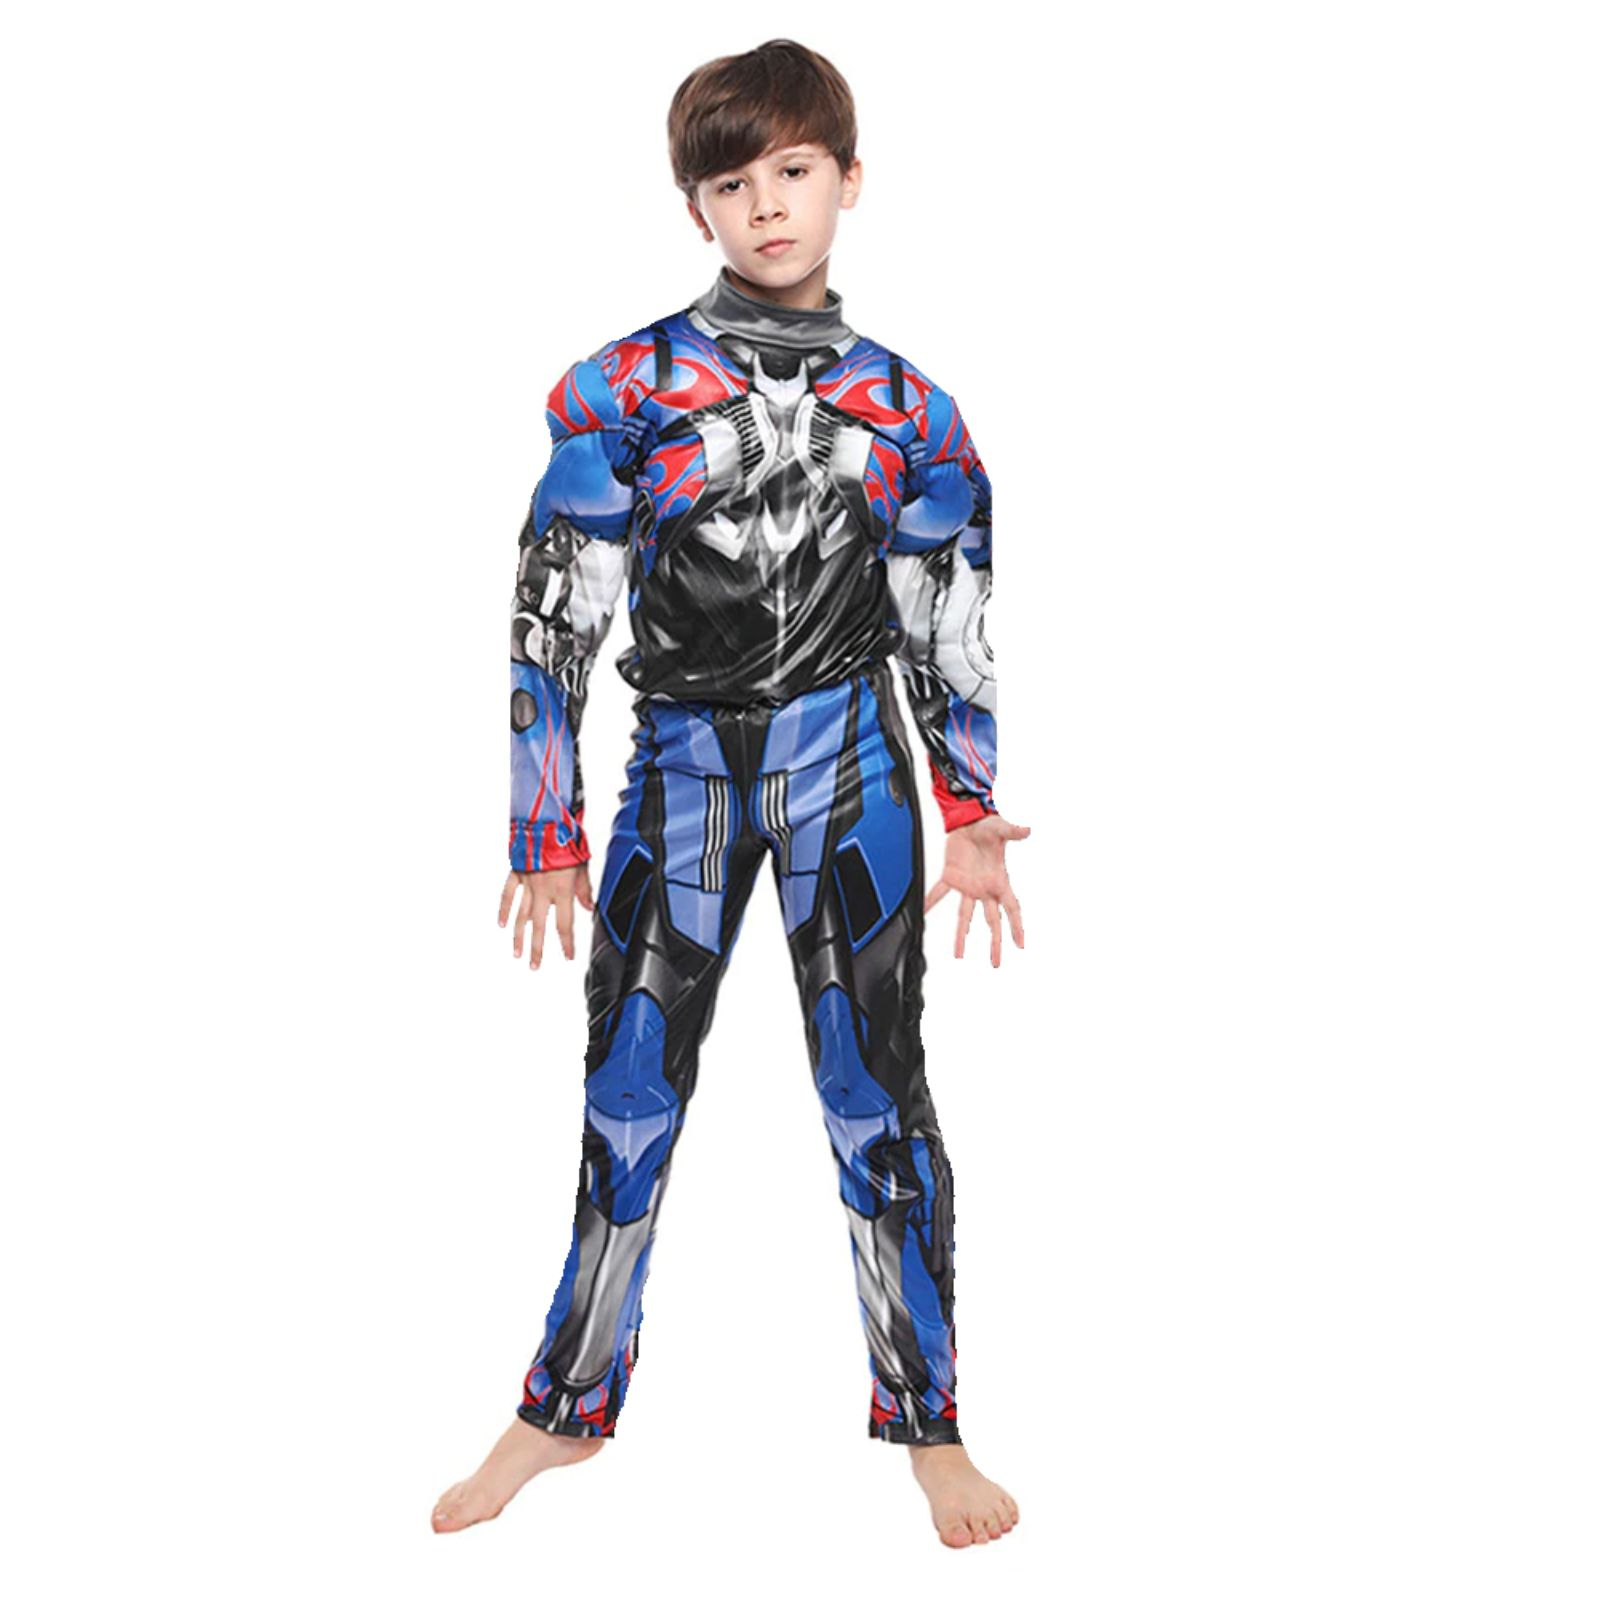 Costum cu muschi Transformers Optimus Prime pentru baieti 100-110 cm 3-5 ani